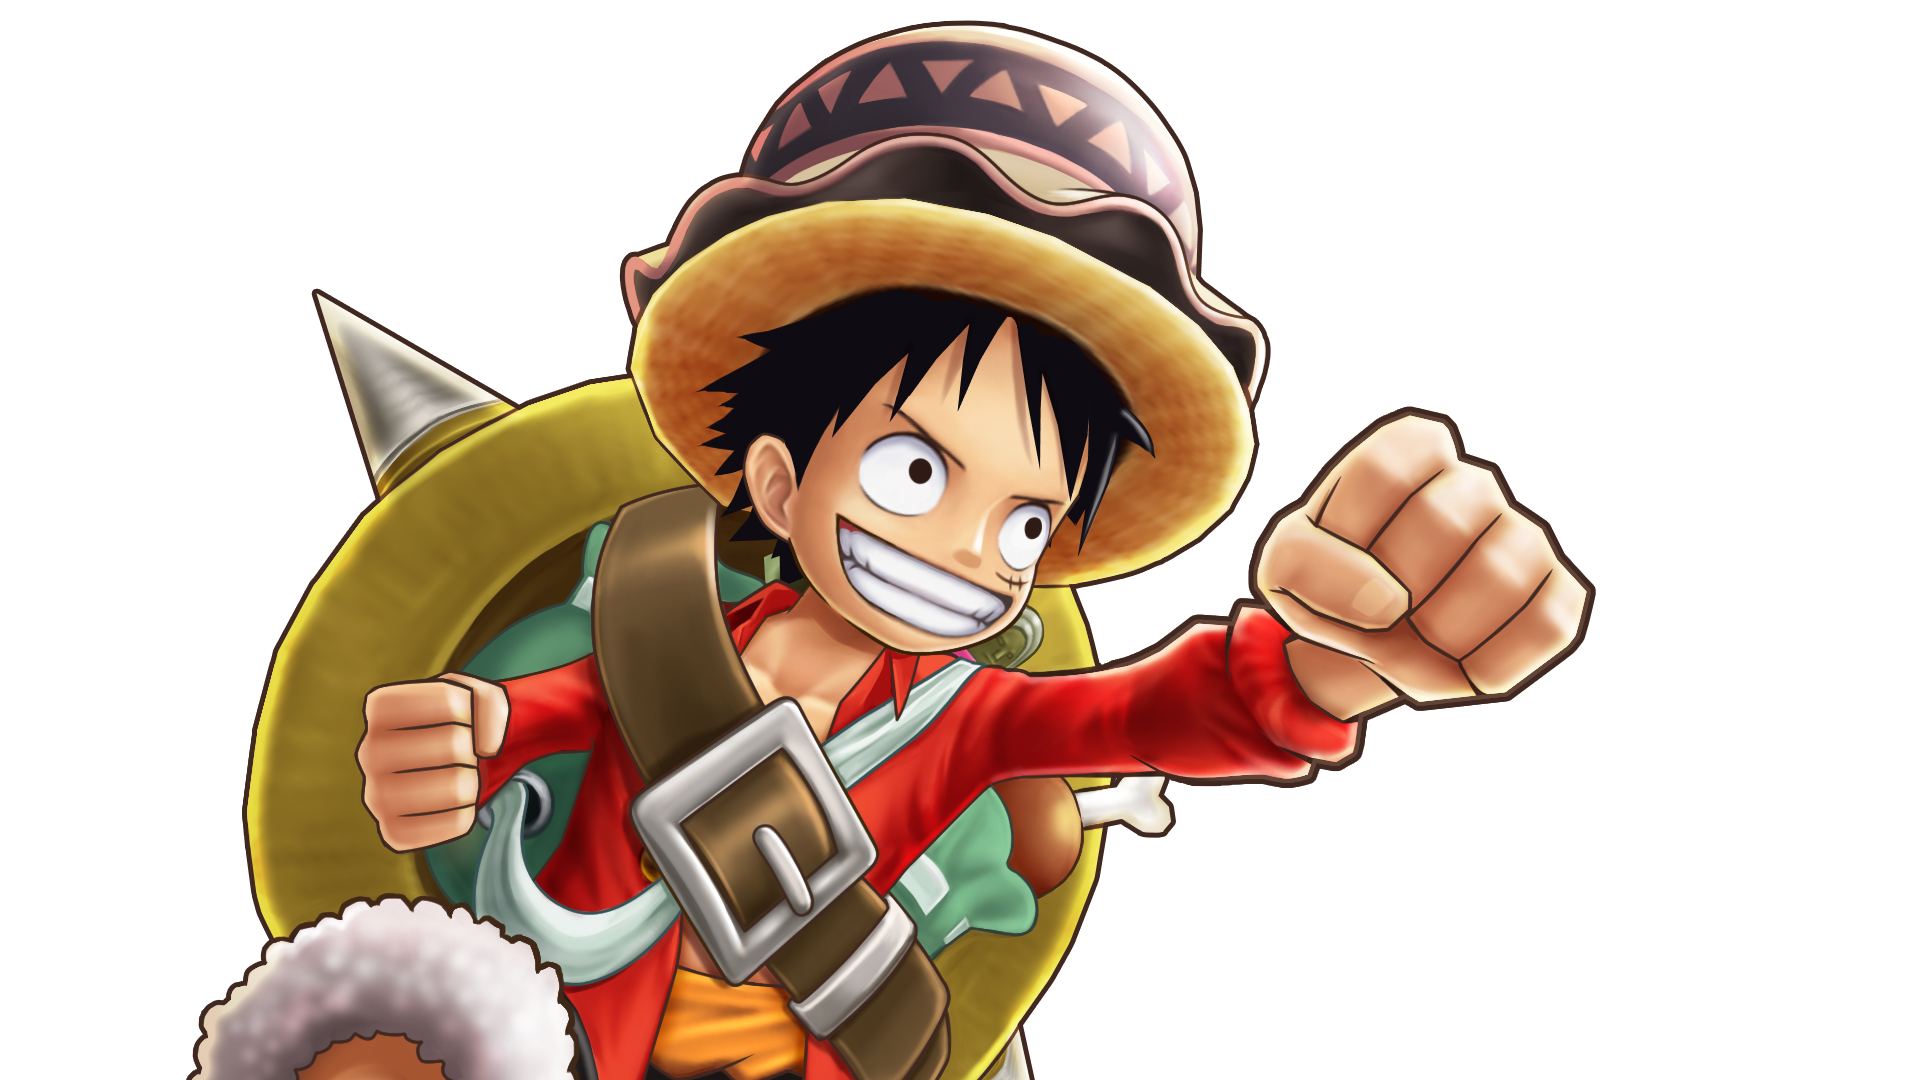 7キャラメダル ルフィ 公式 サウスト One Piece サウザンドストーム最速攻略wiki